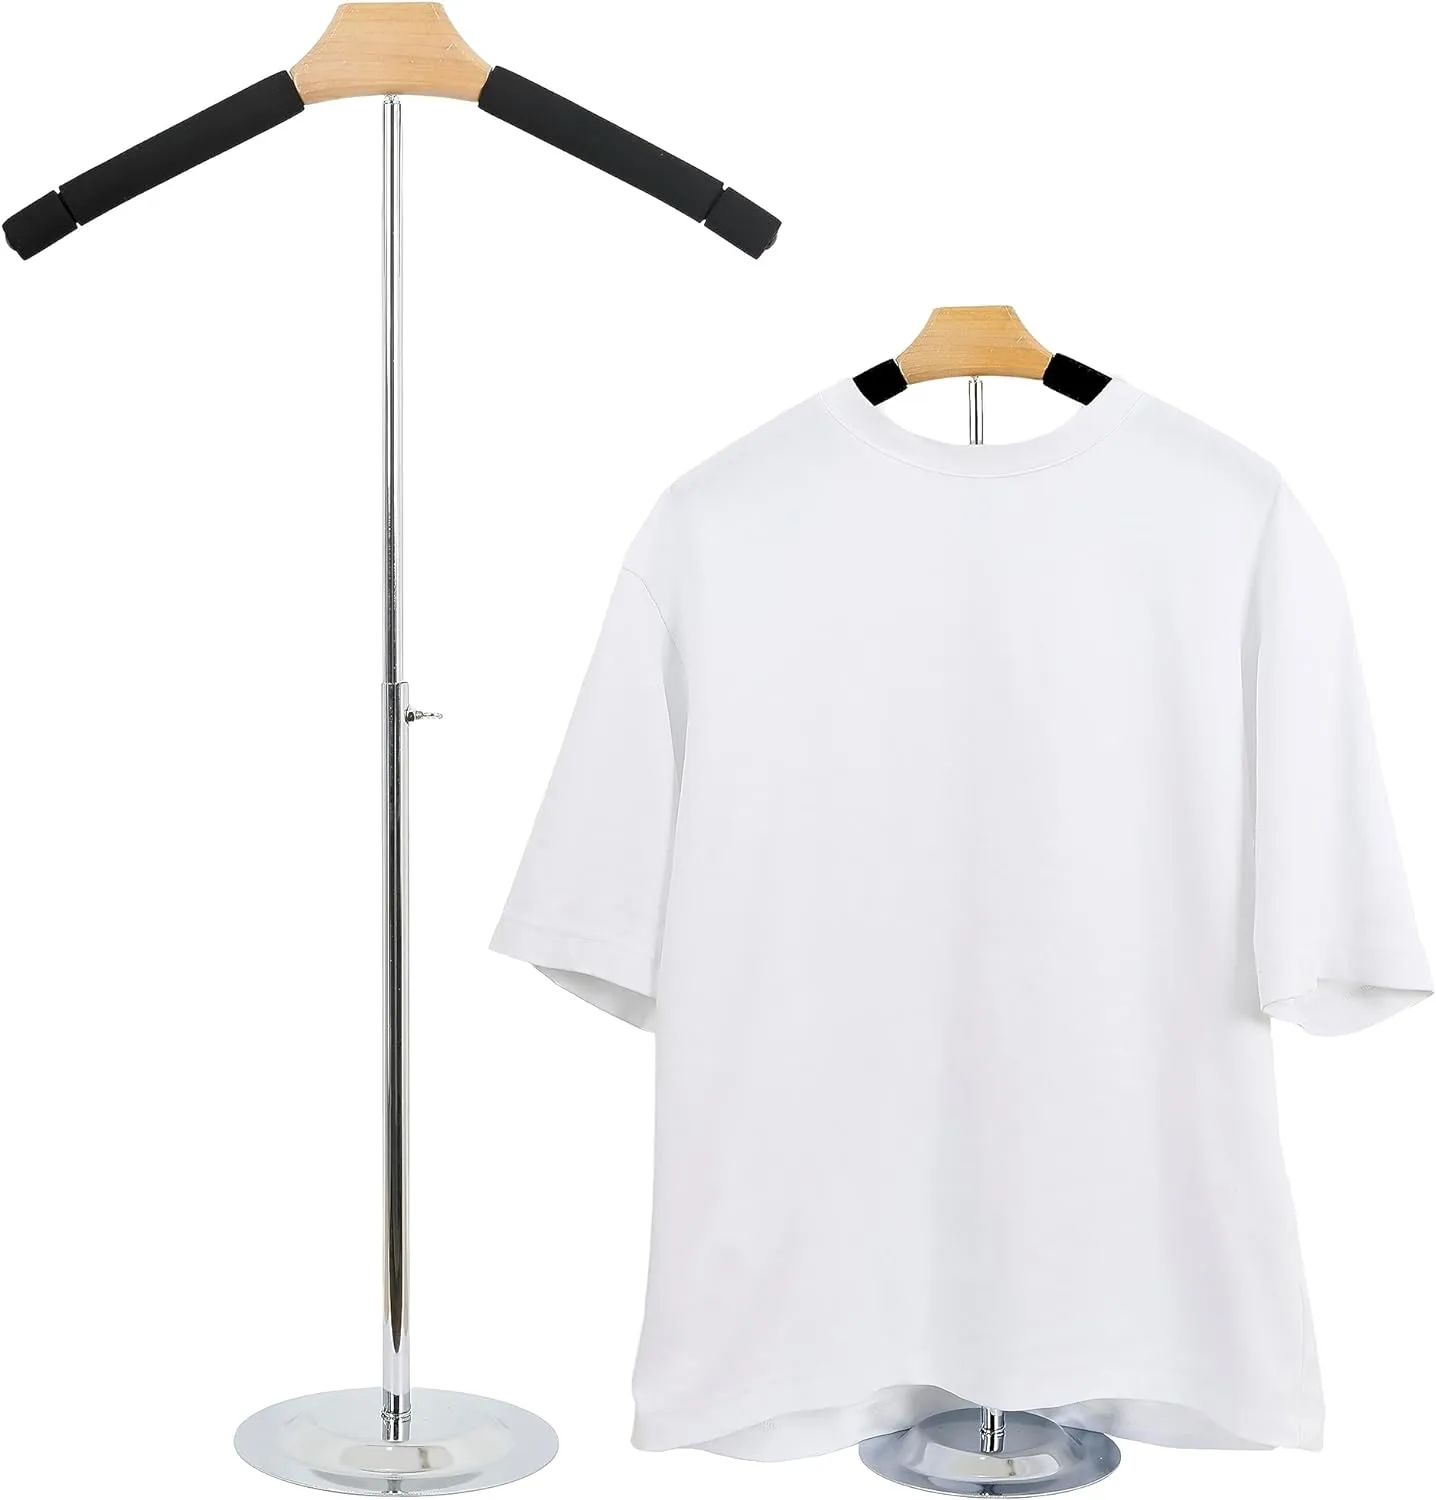 Présentoir réglable pour T-Shirt-support de cintre Portable en métal noir pour chemises, manteaux